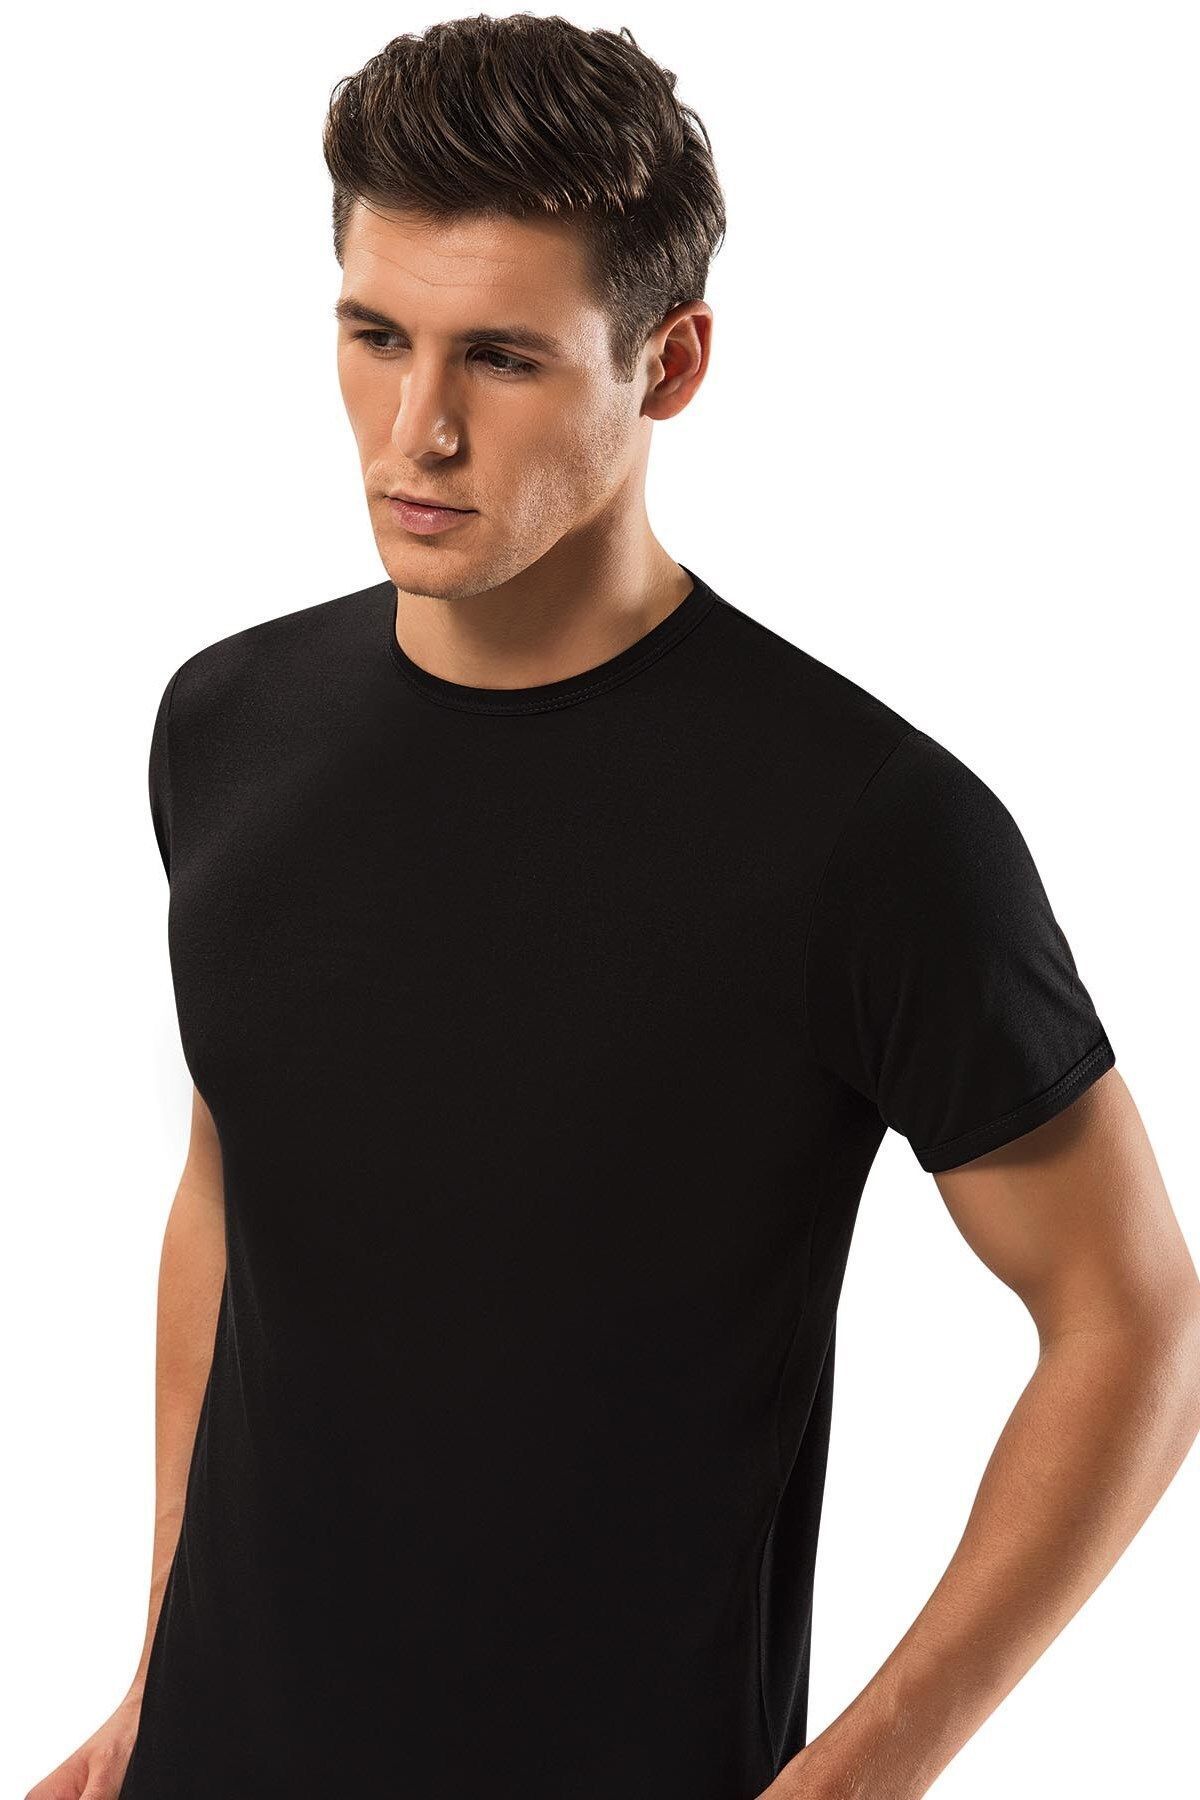 ERDEM İÇ GİYİM Erdem Siyah Gold Modal 0 Yaka T-shirt 1552